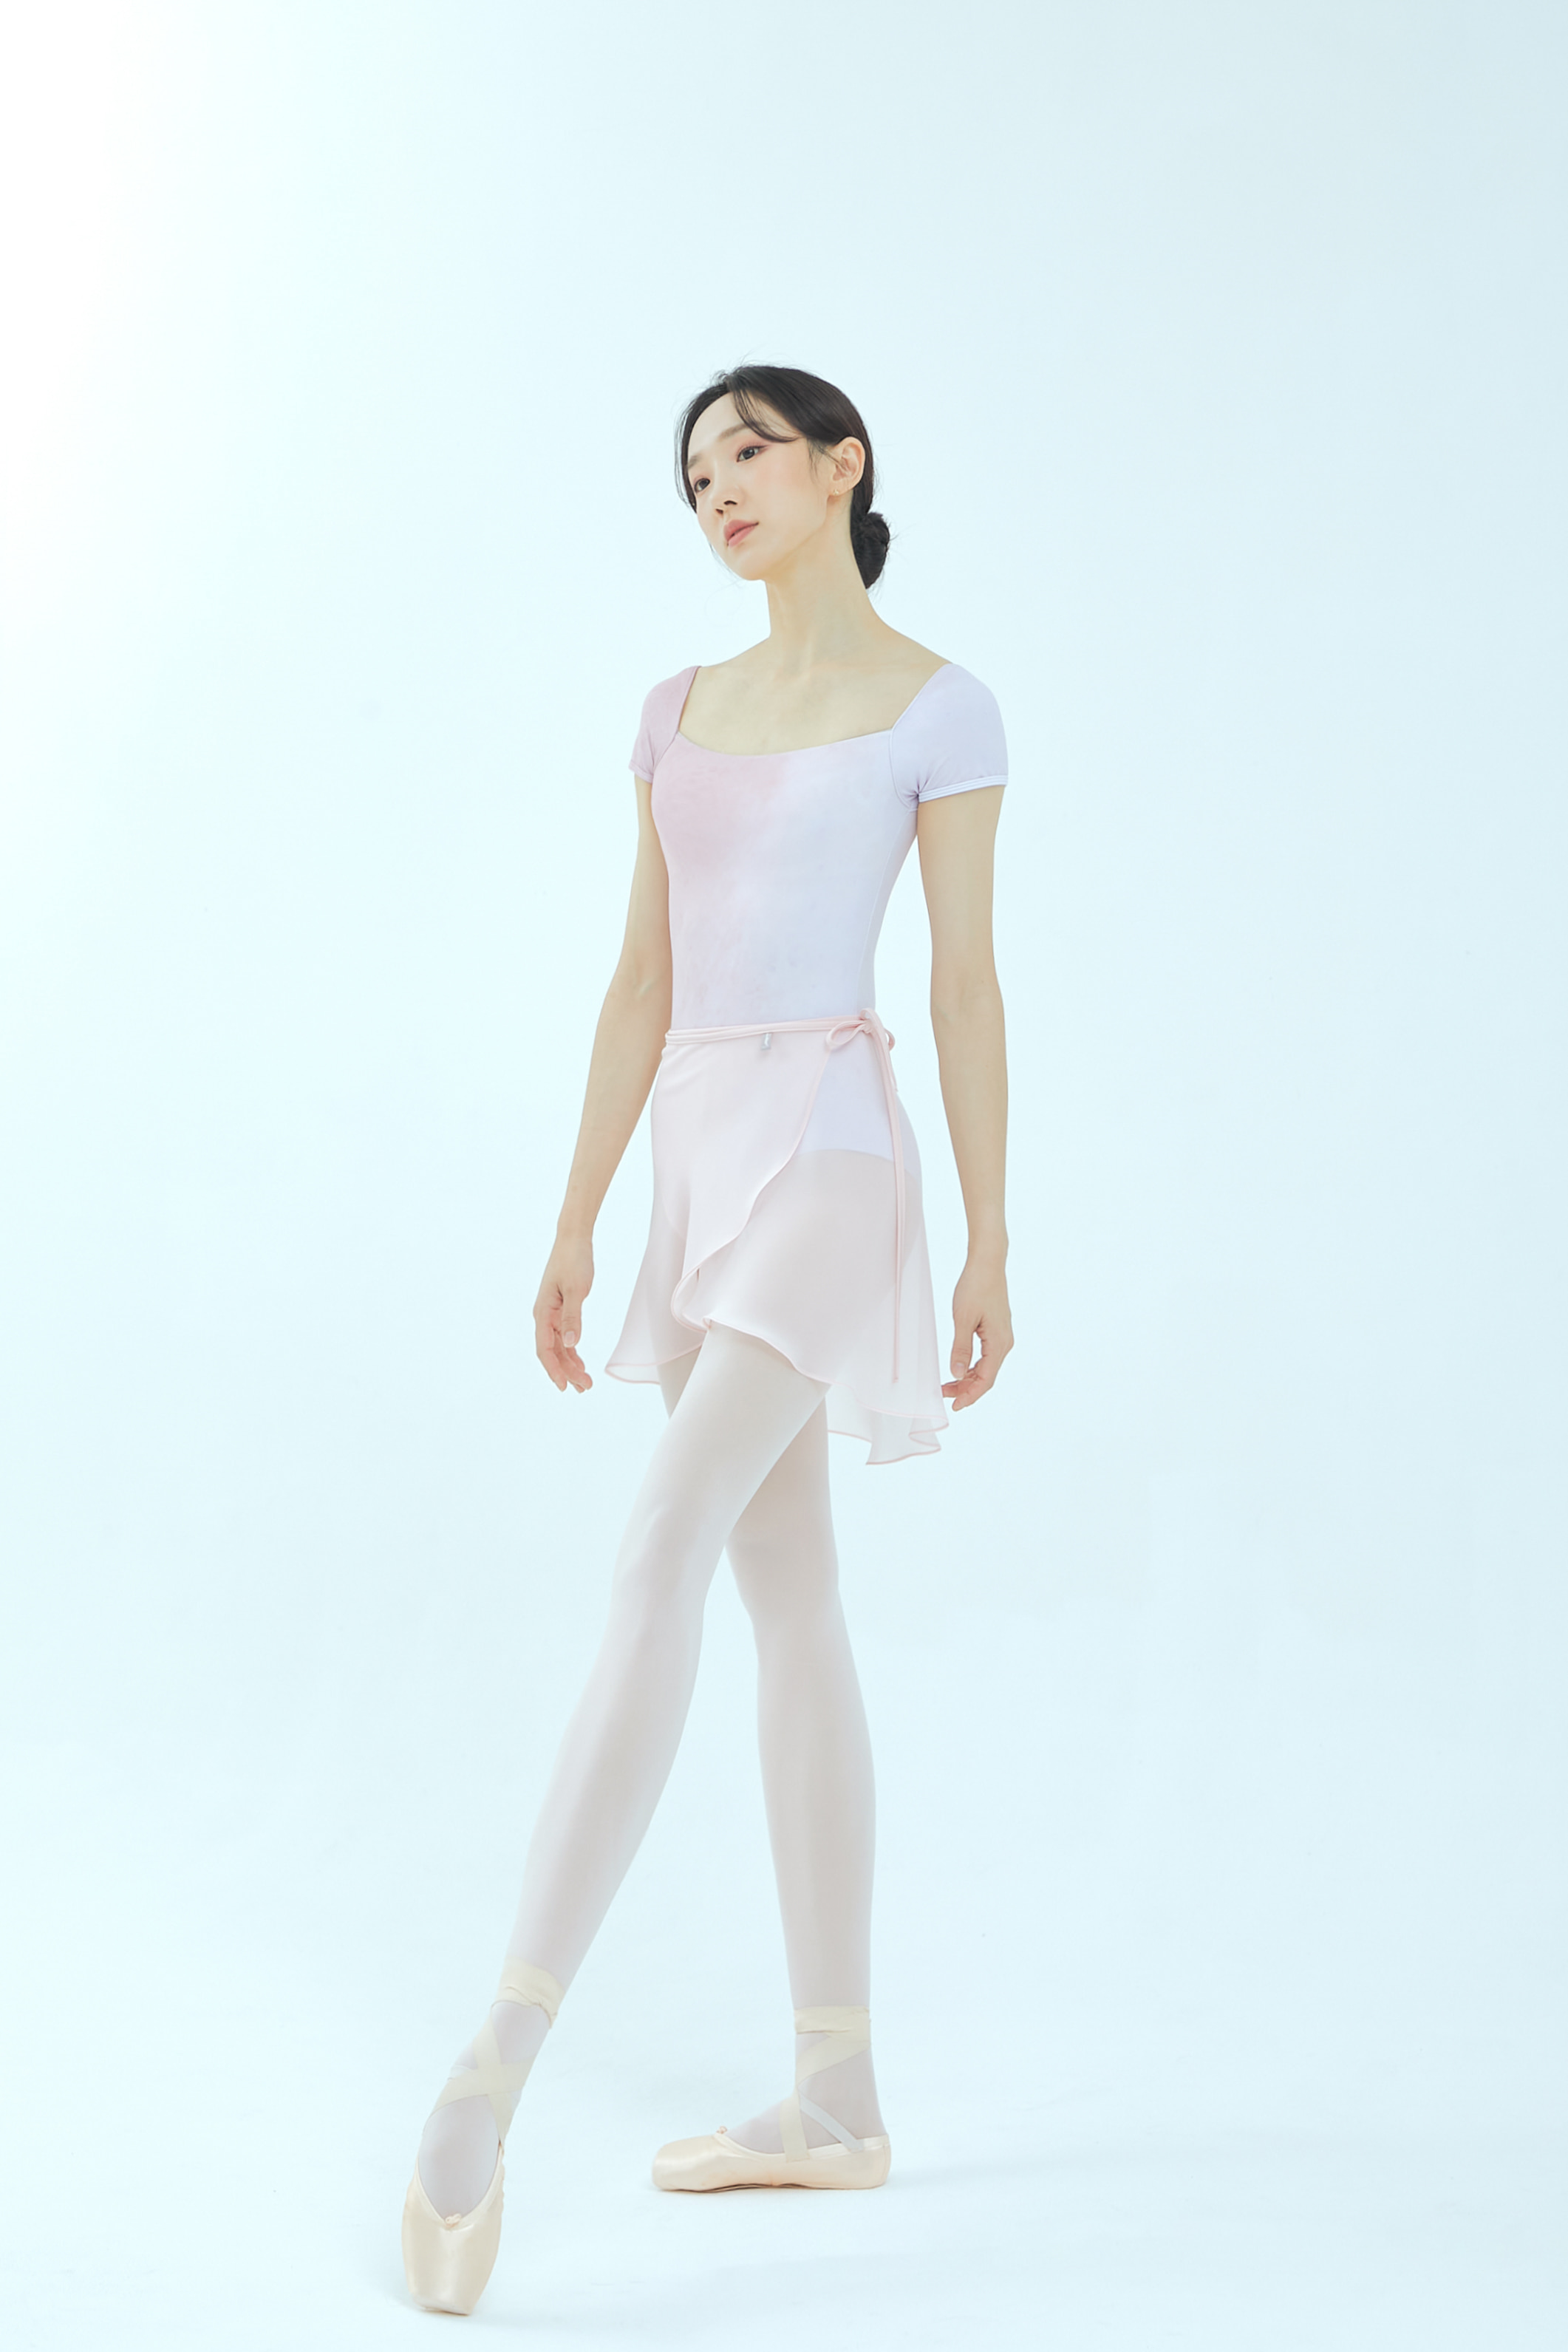 majouet balletwear